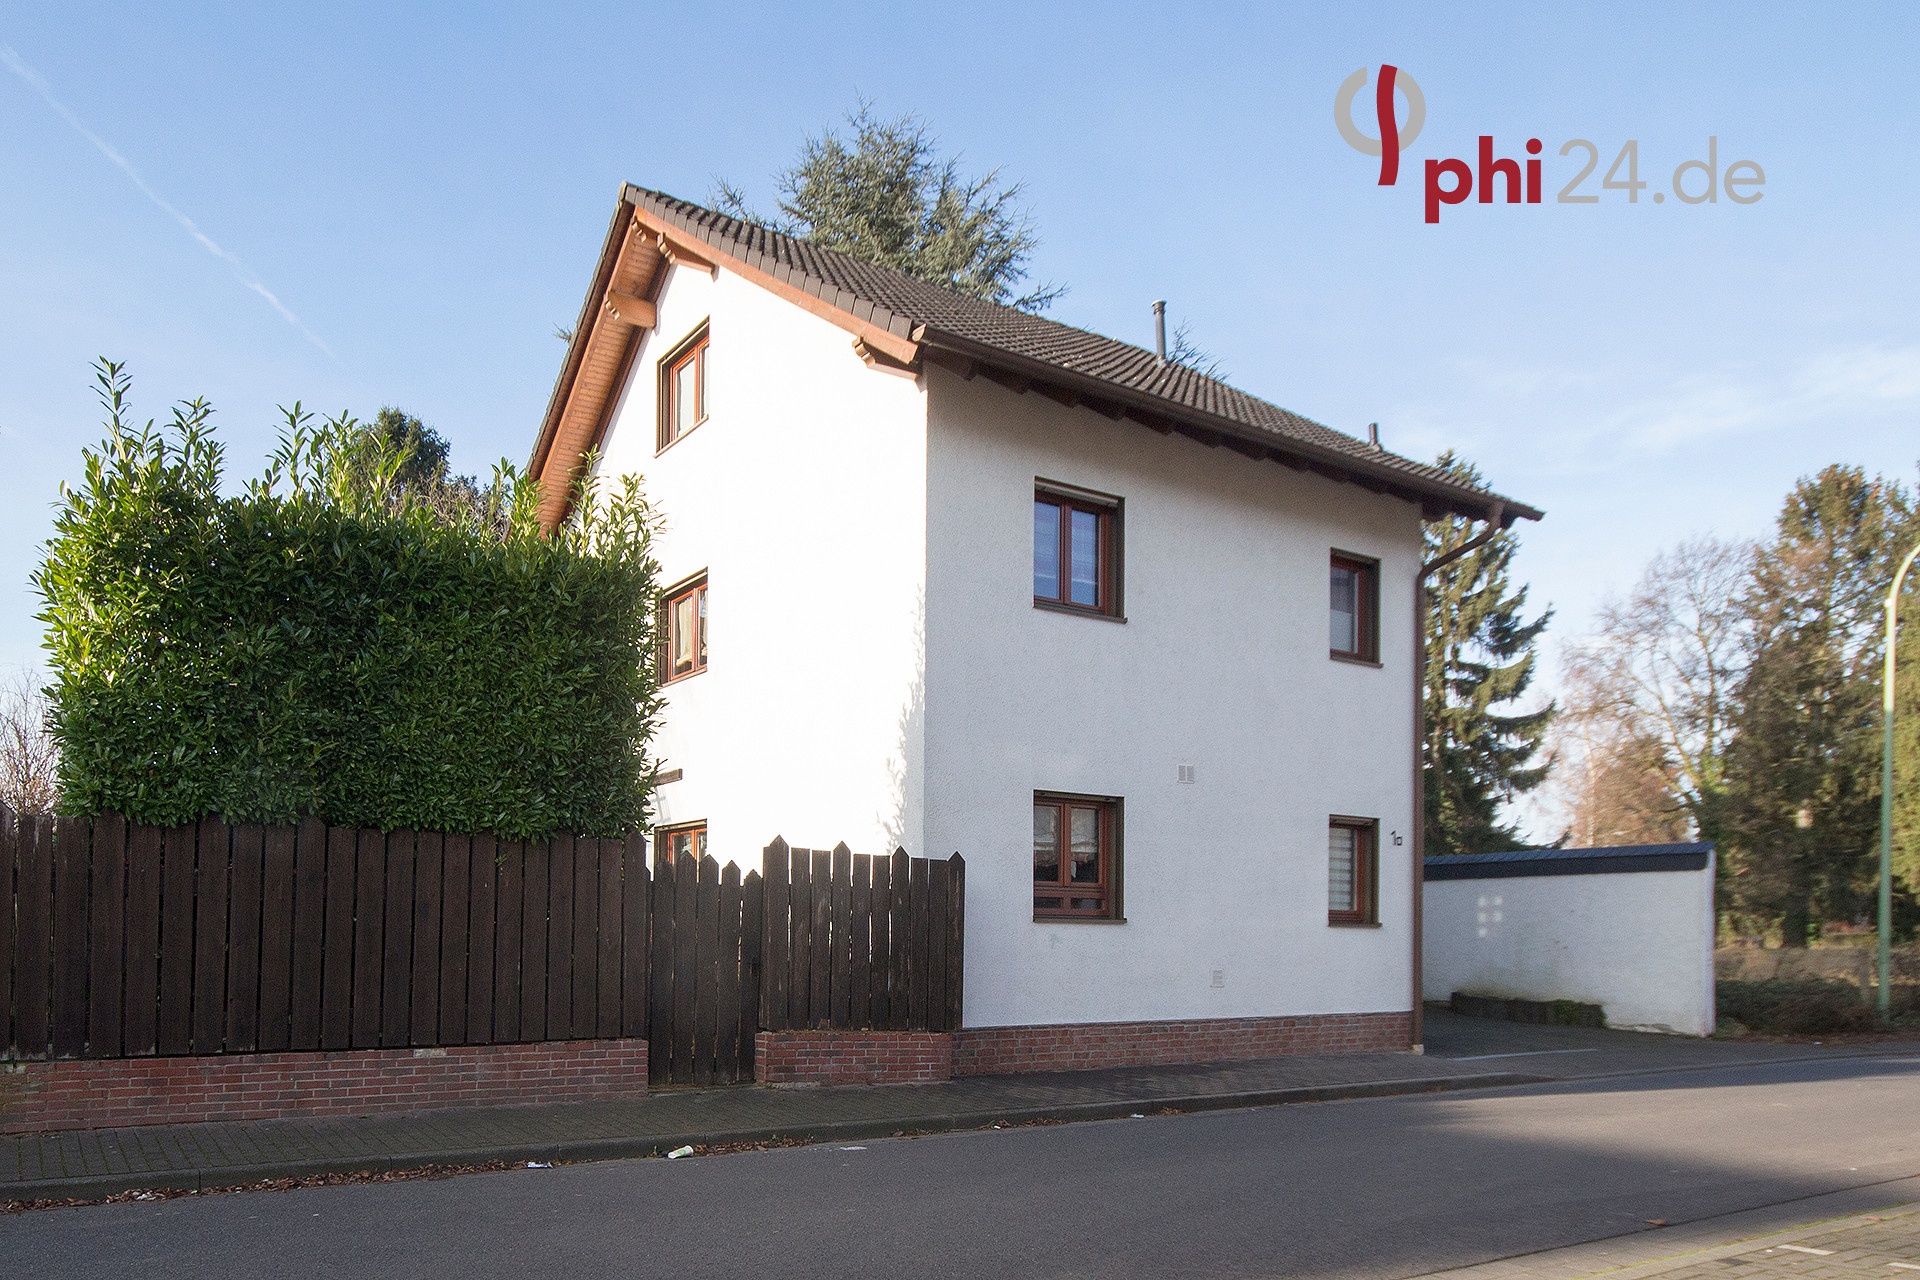 Immobilienmakler Baesweiler Einfamilienhaus referenzen mit Immobilienbewertung